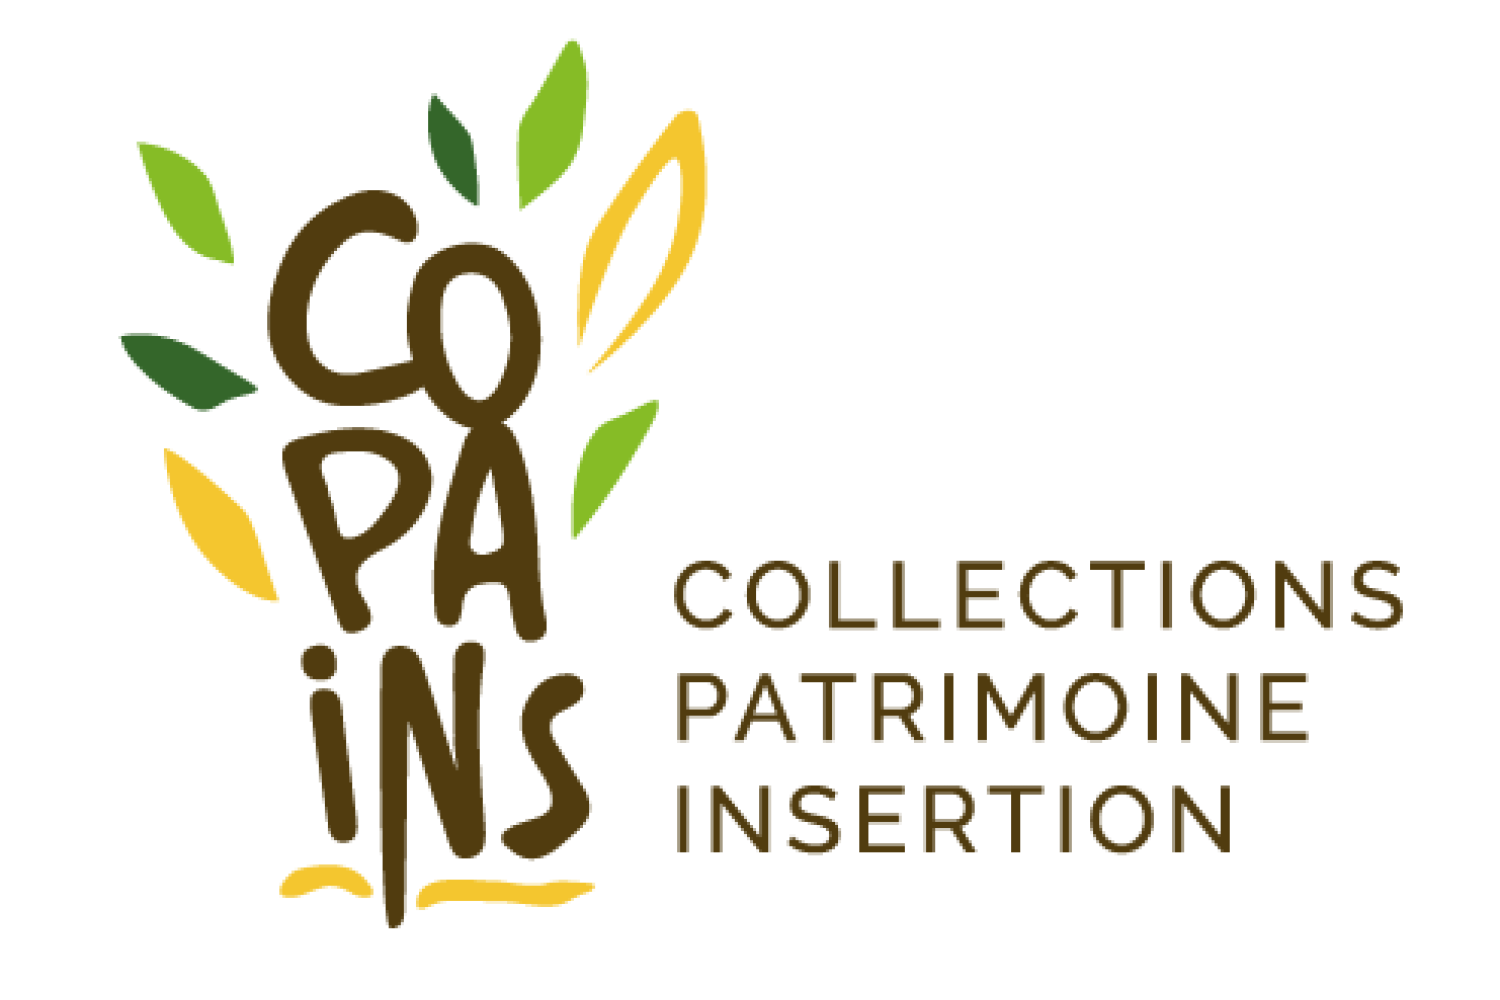 copains-logo-officiel.png